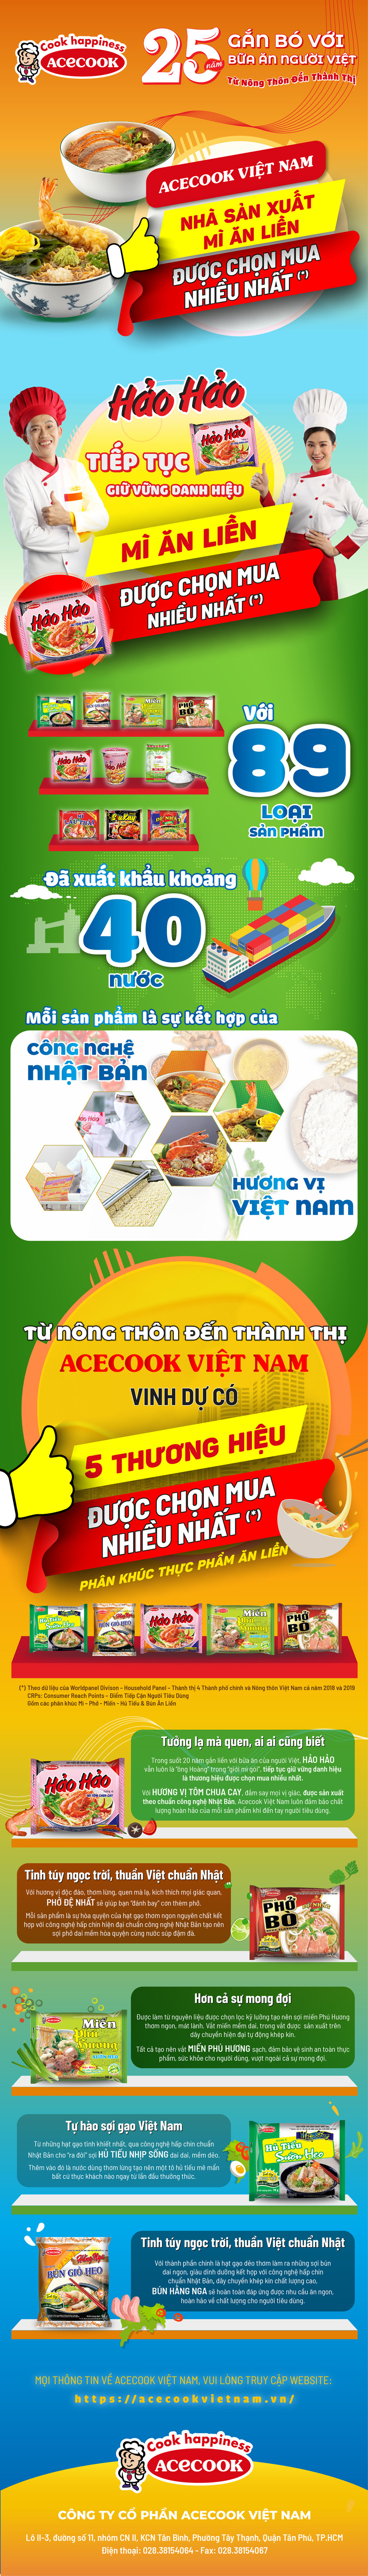 Nhà sản xuất mì ăn liền được chọn mua nhiều nhất thuộc về Acecook Việt Nam - Ảnh 1.